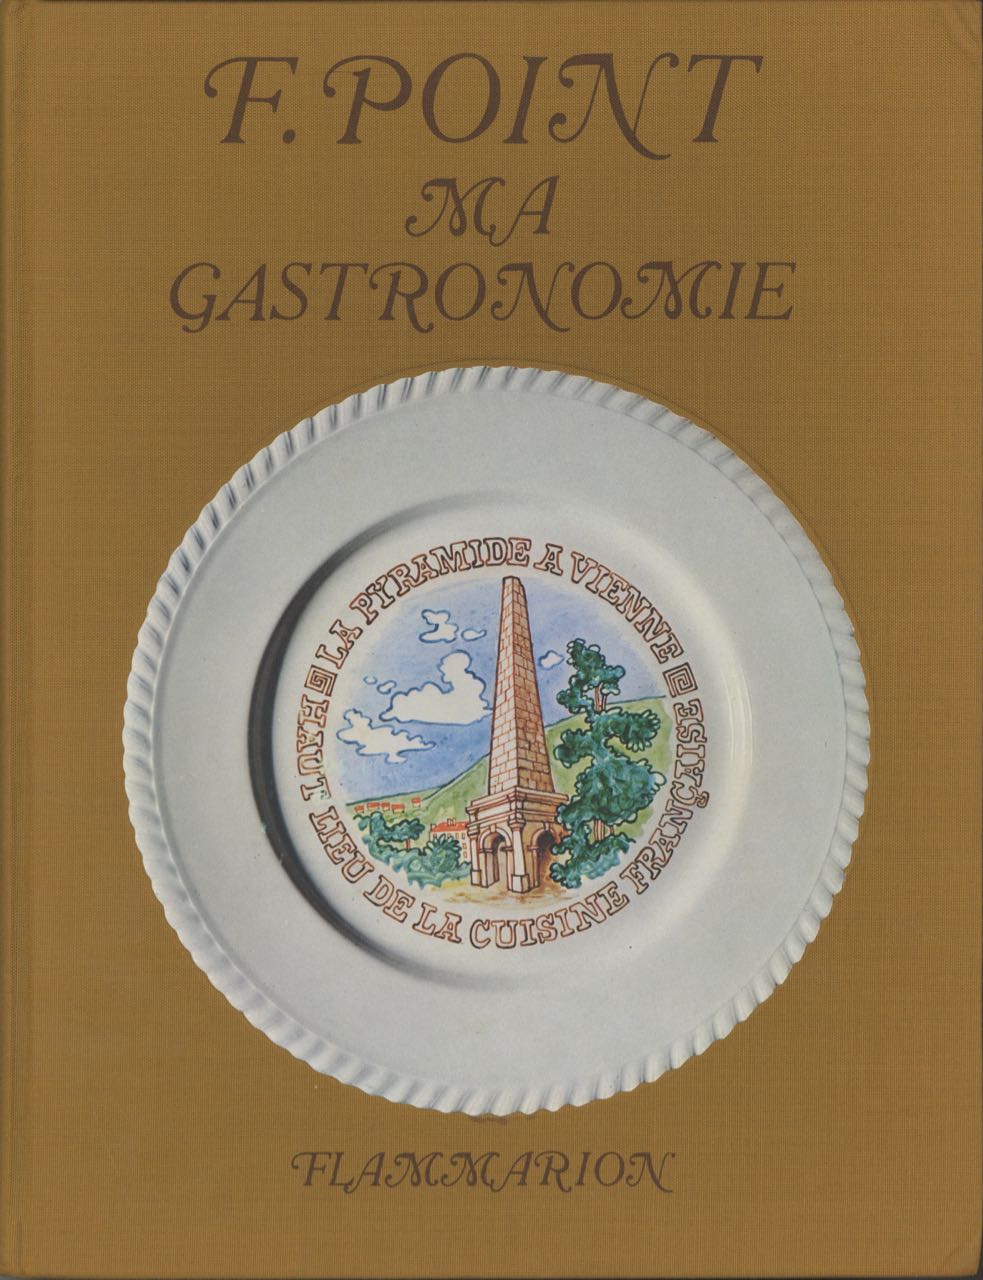 Item #2334 Ma Gastronomie. Introduction et presentation de Felix Benoit. Neuf compositions de Dunoyer de Segoznac. Point, ernand, Fernand.